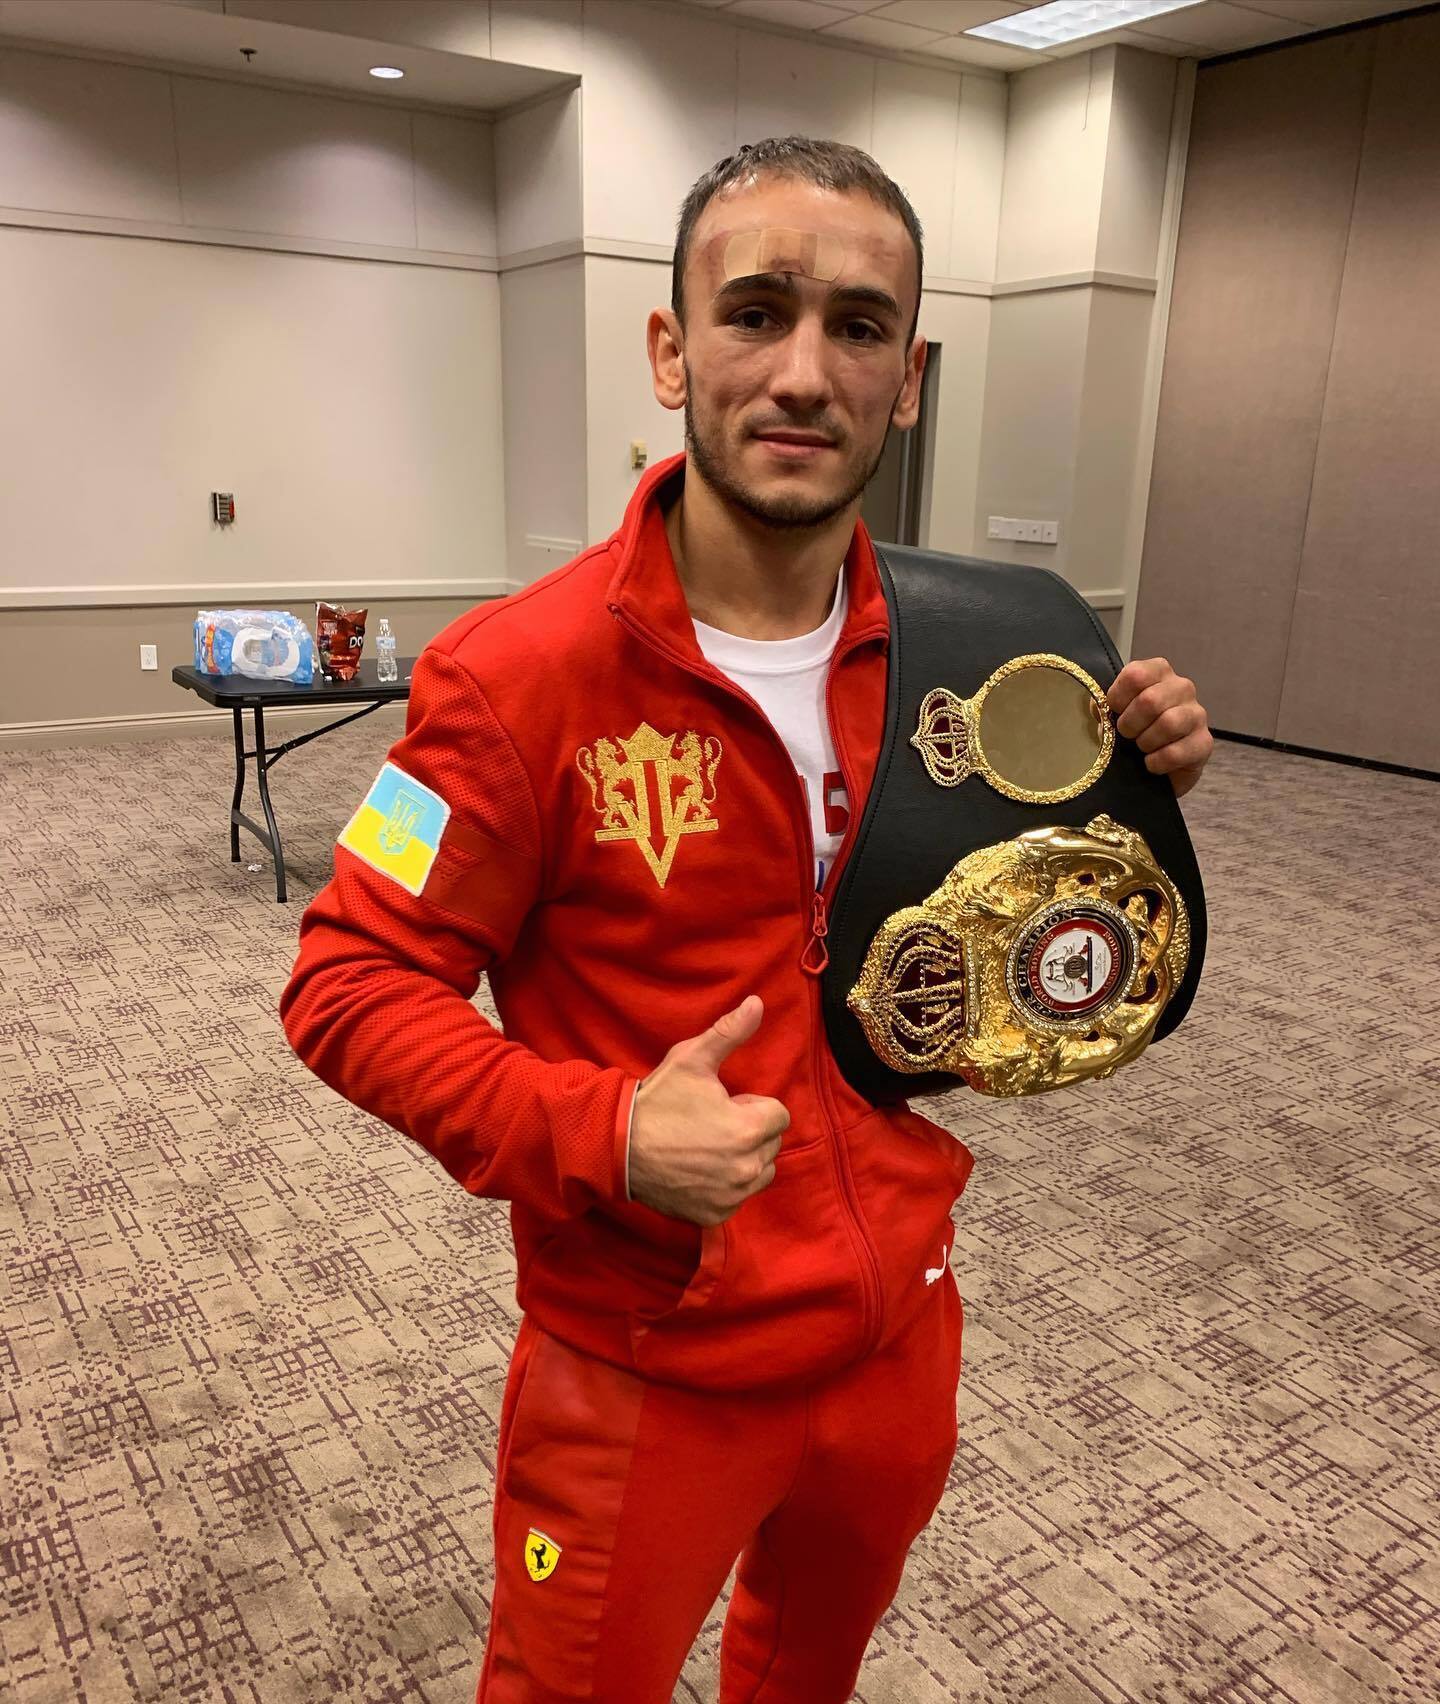 Український боксер-чемпіон виграв нокаутом бій у США. Відео